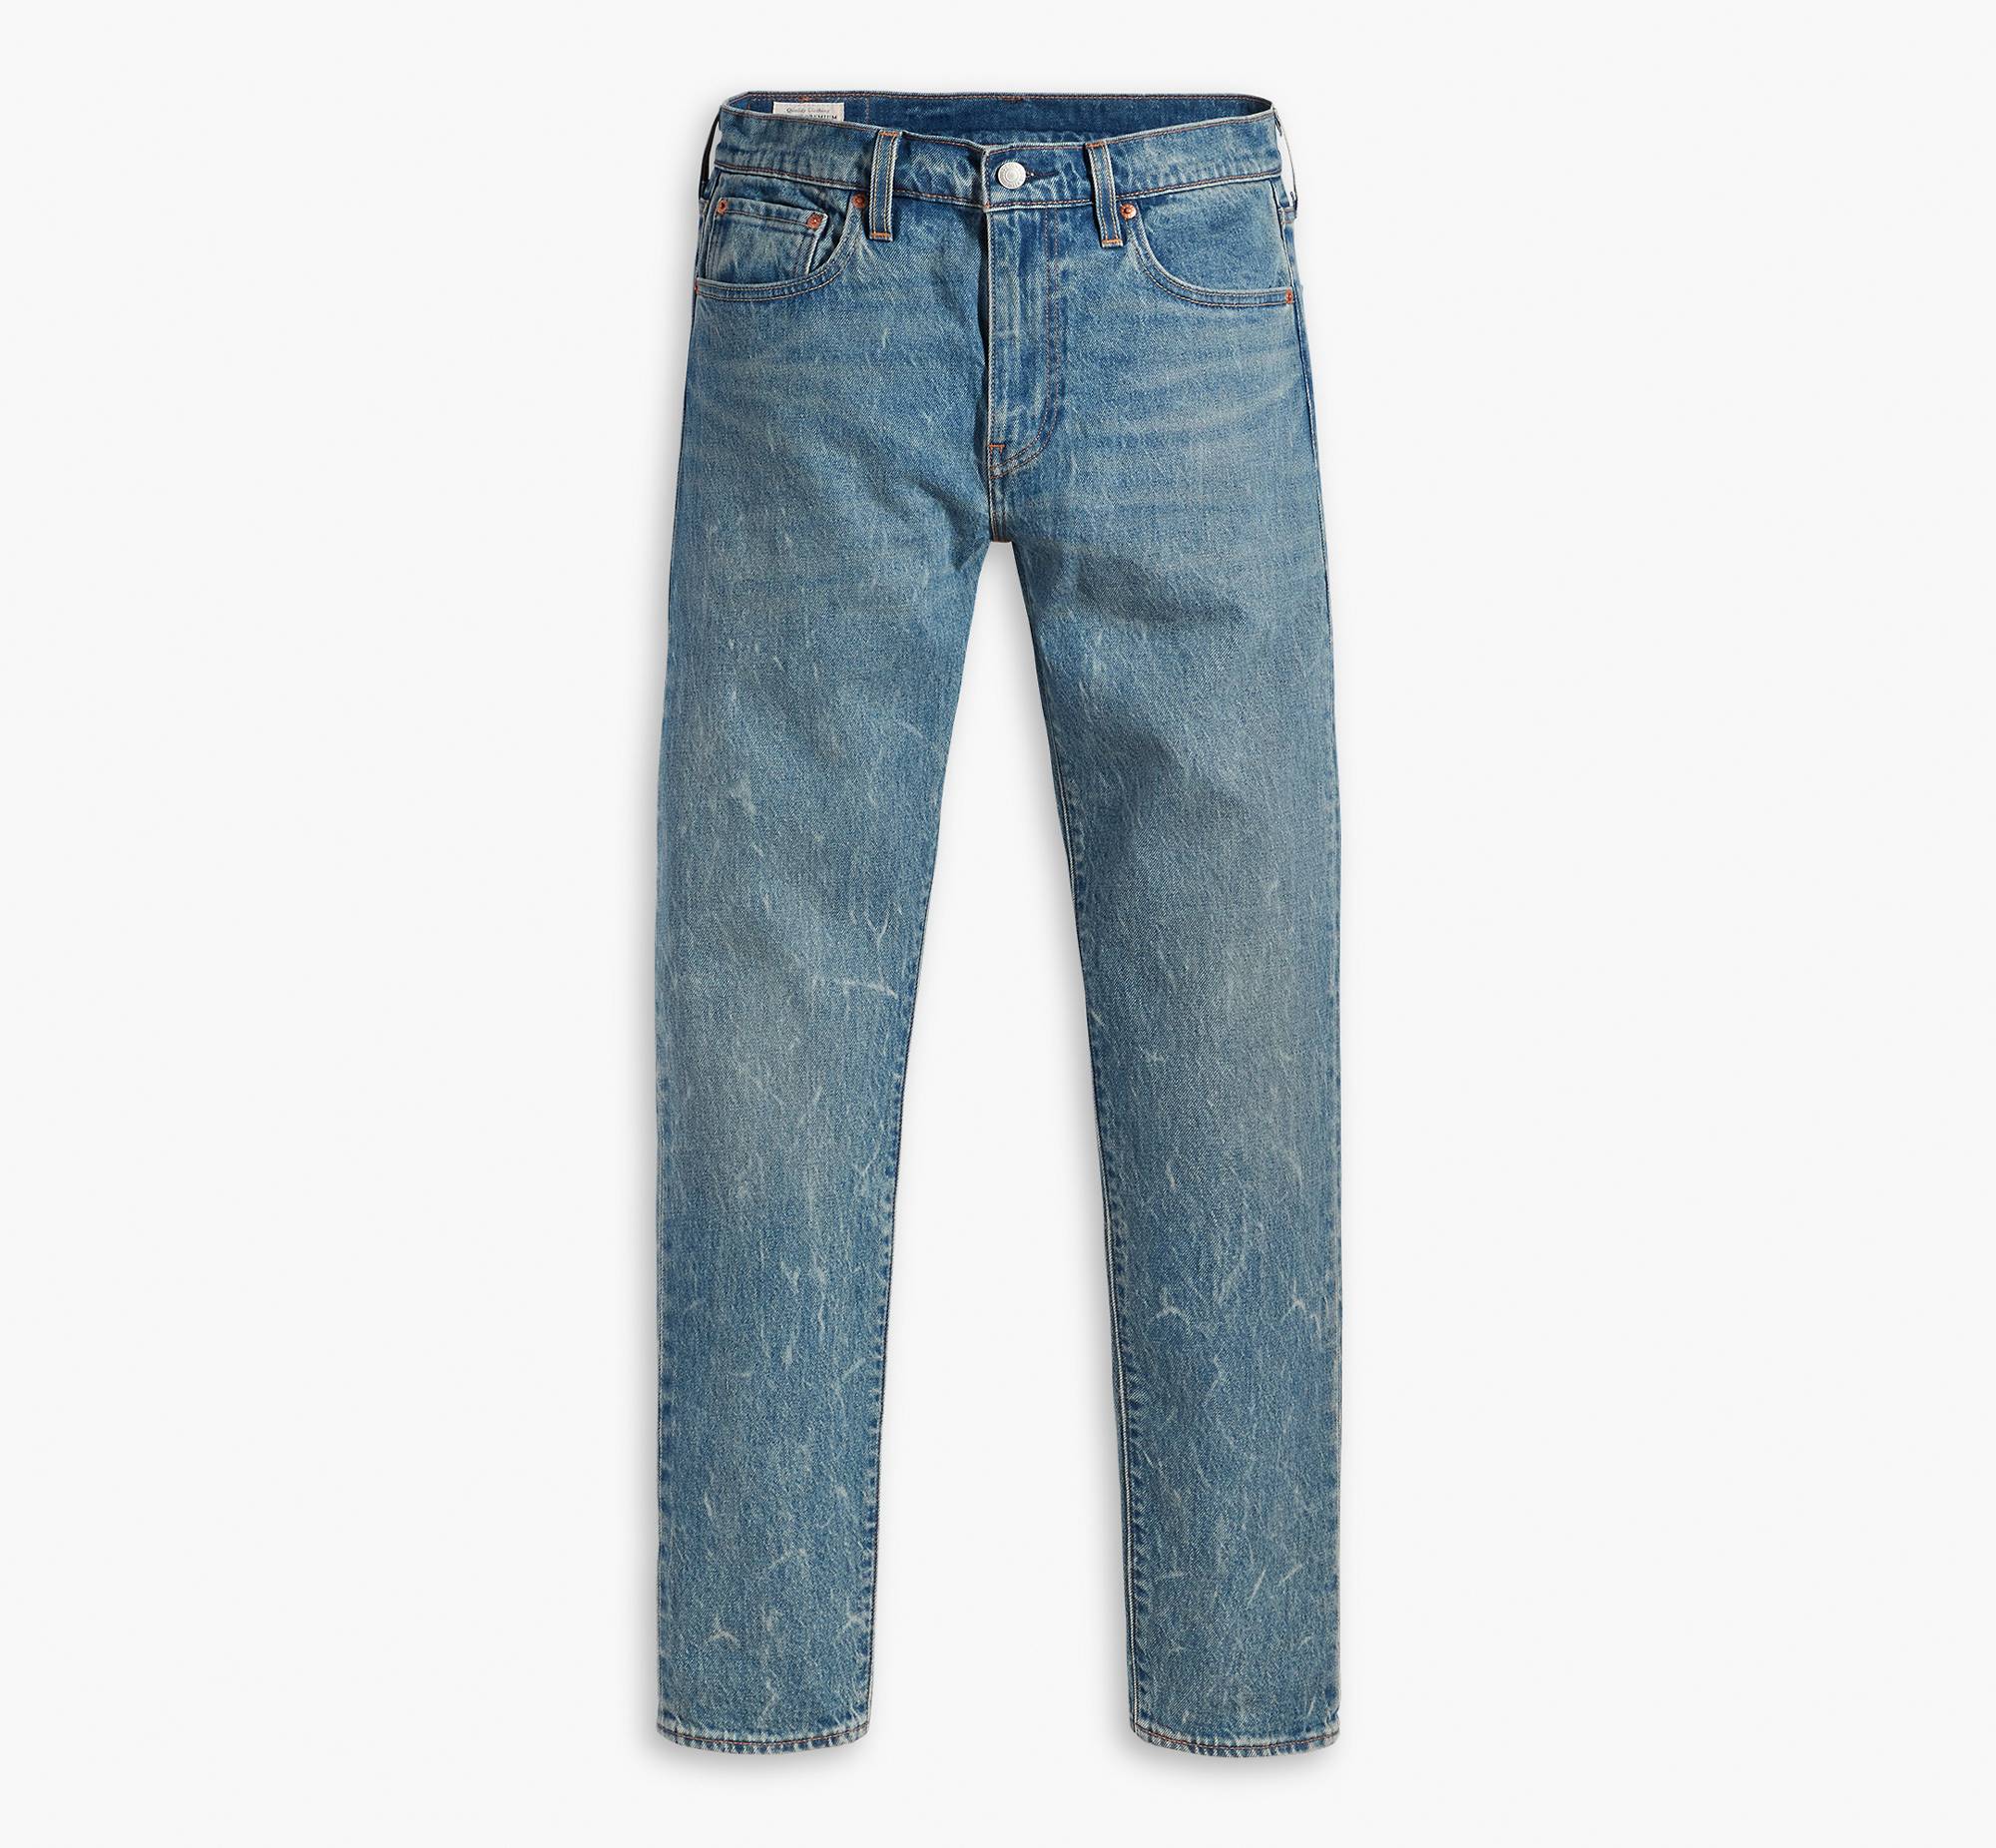 512™ Slim Taper Jeans 6